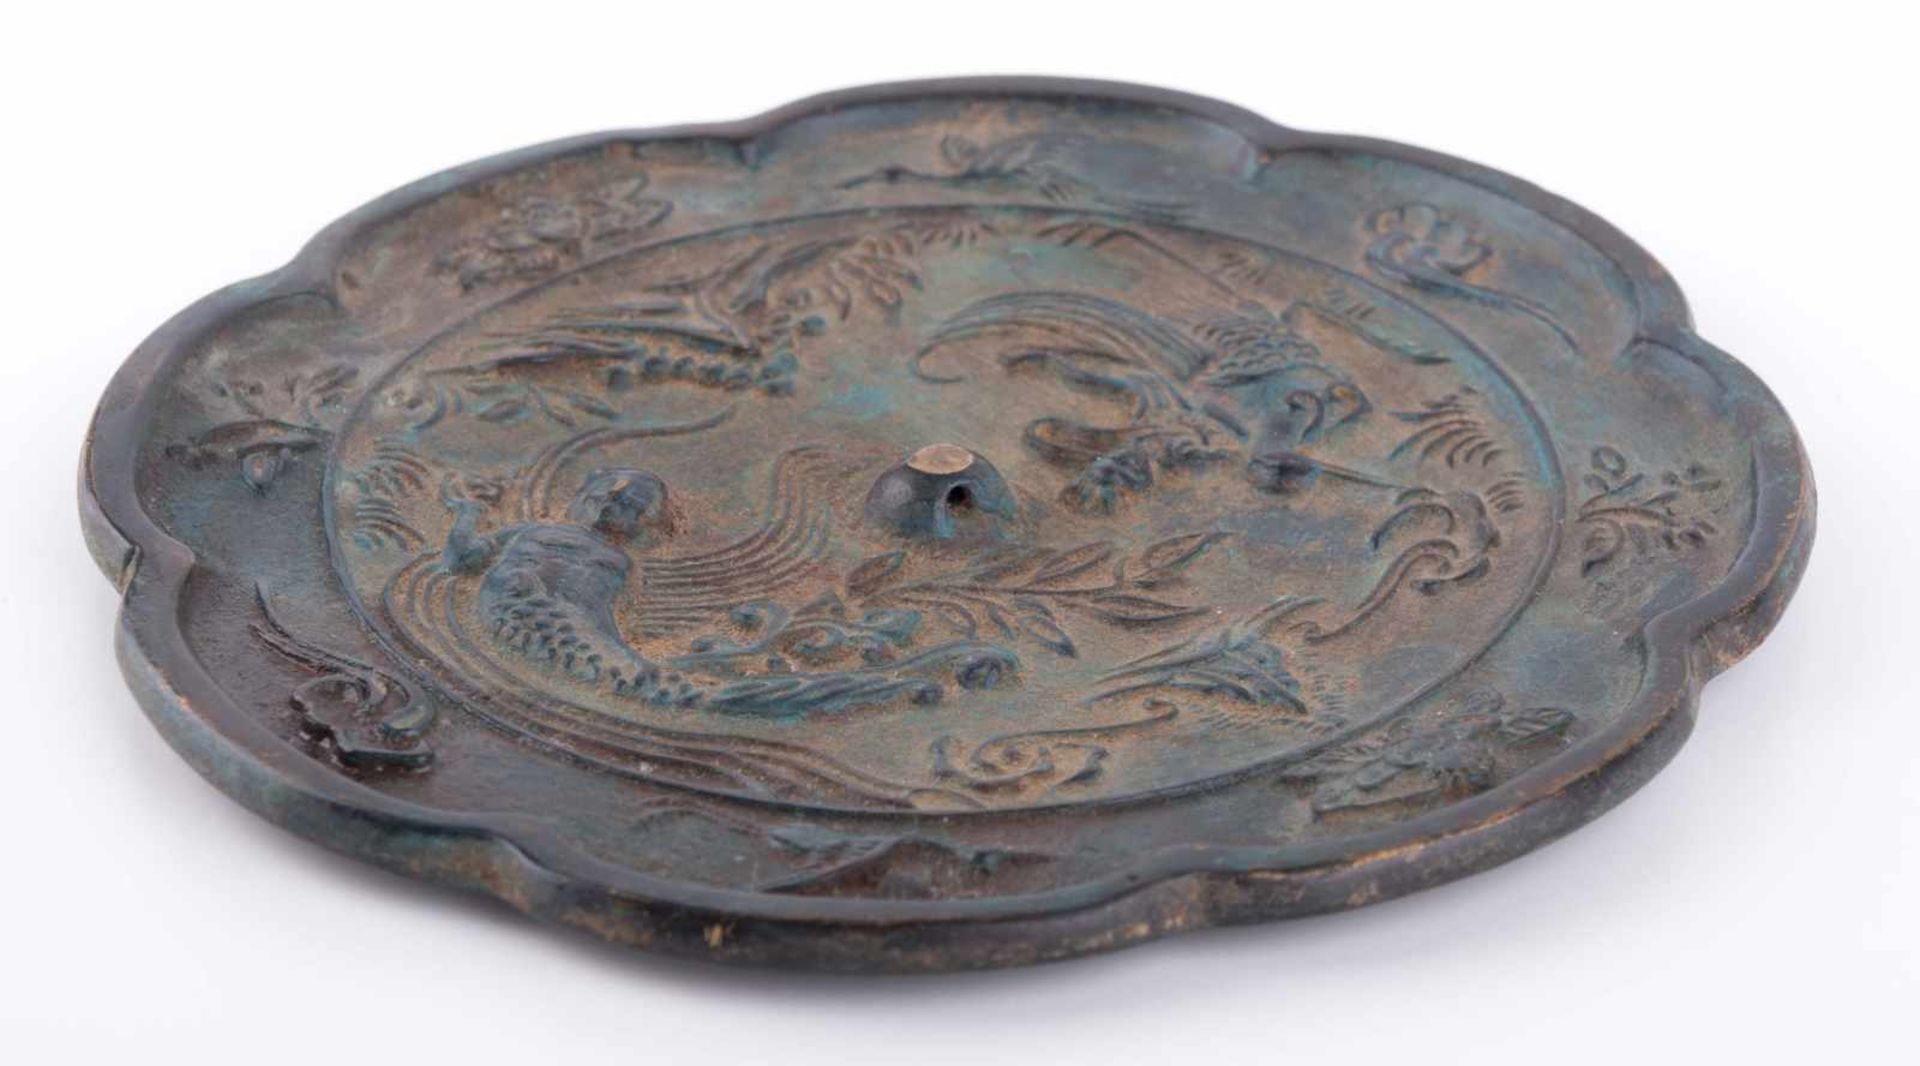 Chinesischer Spiegel 18./19. Jhd. oder älter / Chinese mirror, 18th/19th century or older Bronze, - Bild 2 aus 4